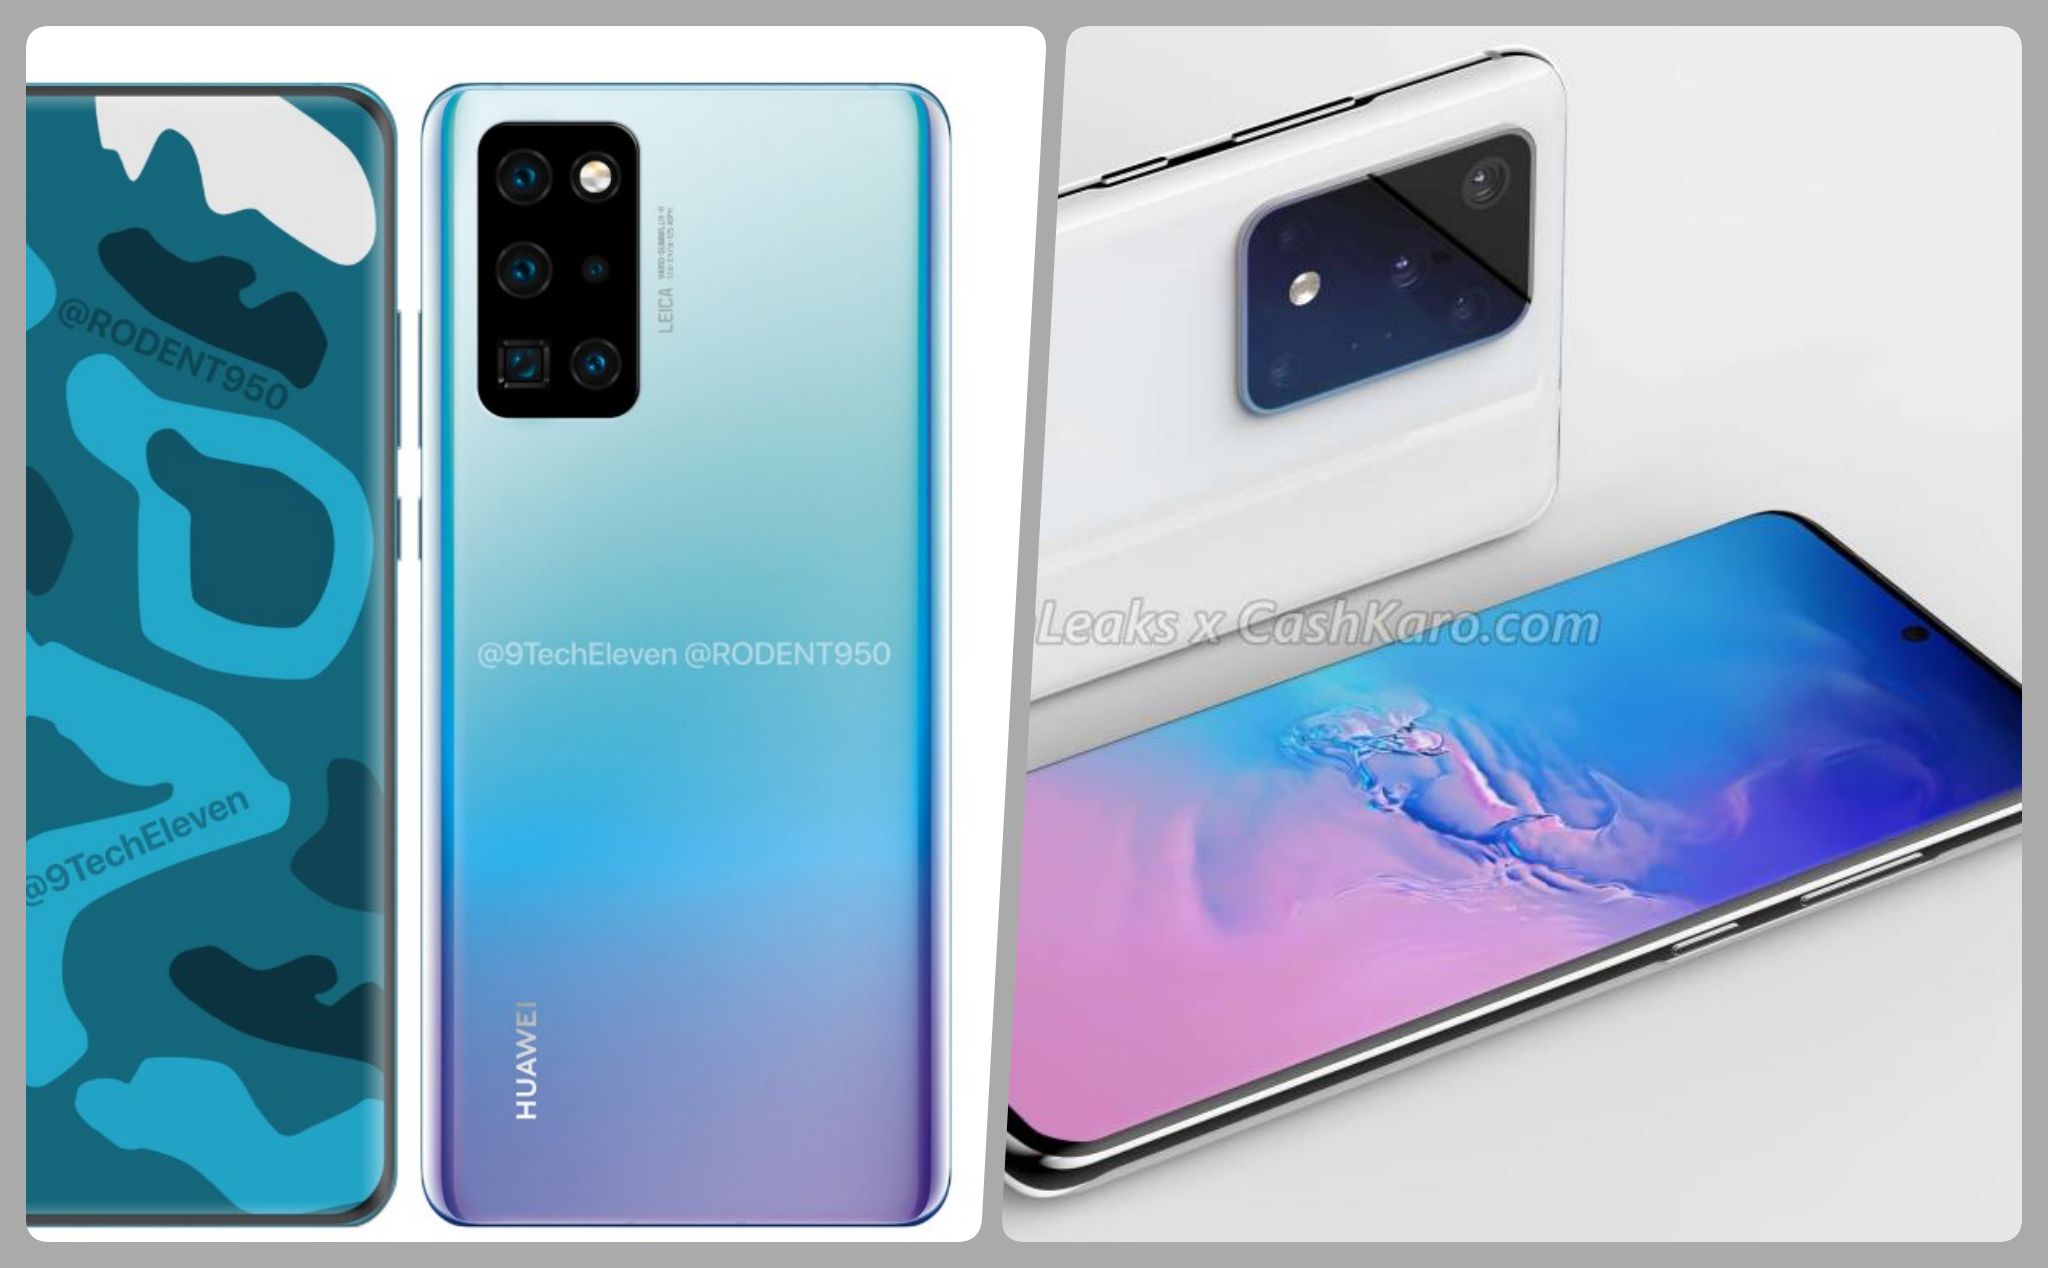 Hình render Huawei P40 Pro và Galaxy S11+: bạn thích chiếc nào hơn?